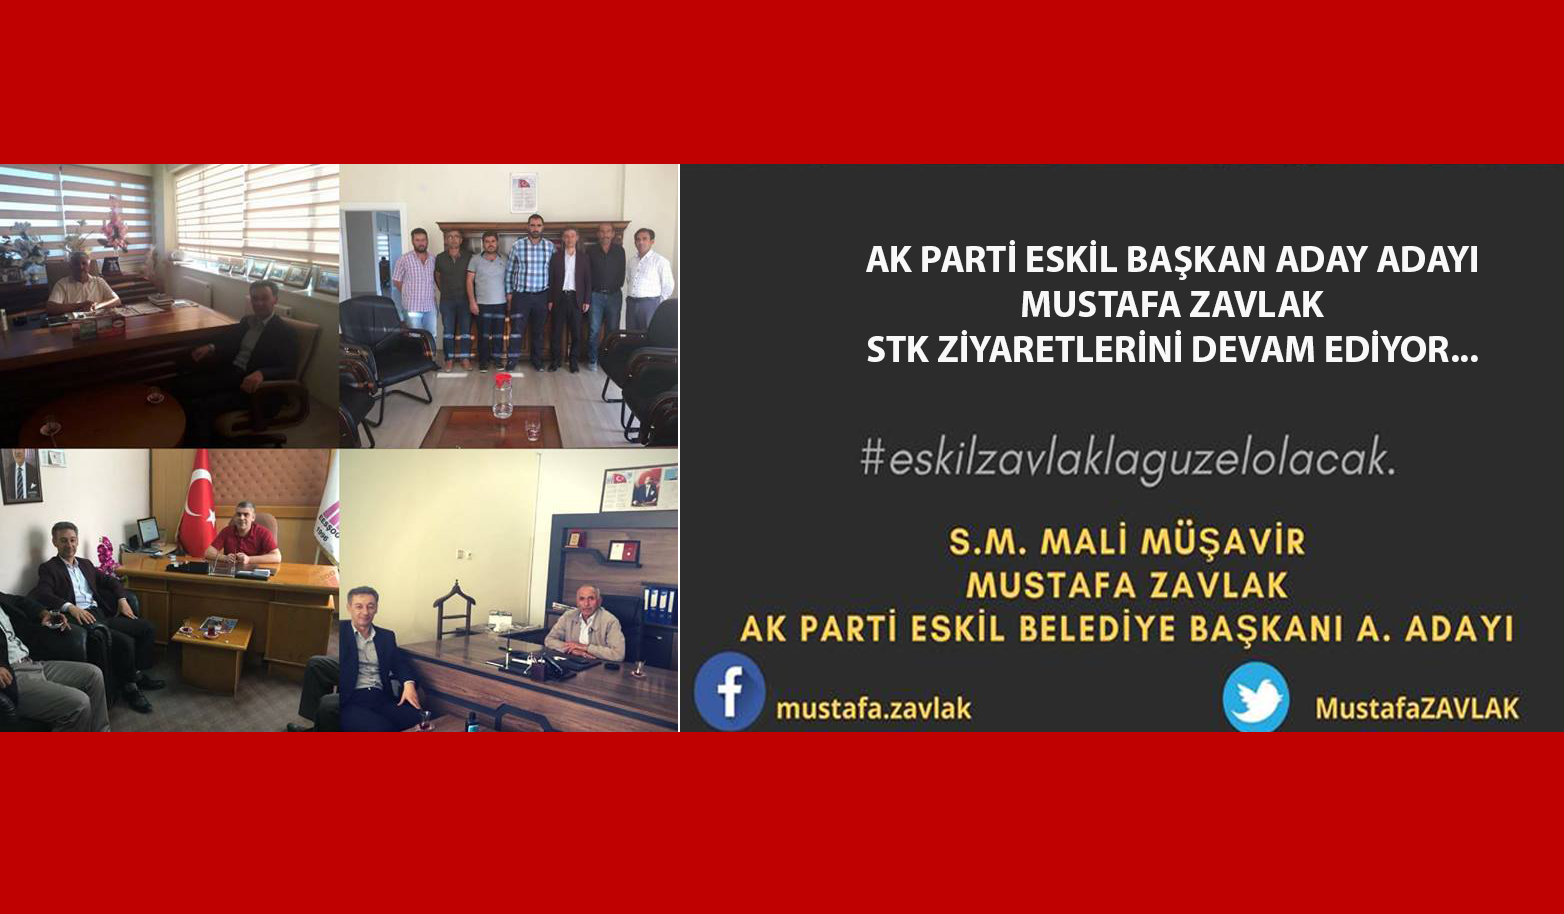 Mustafa Zavlak STK Ziyaretlerini devam ediyor